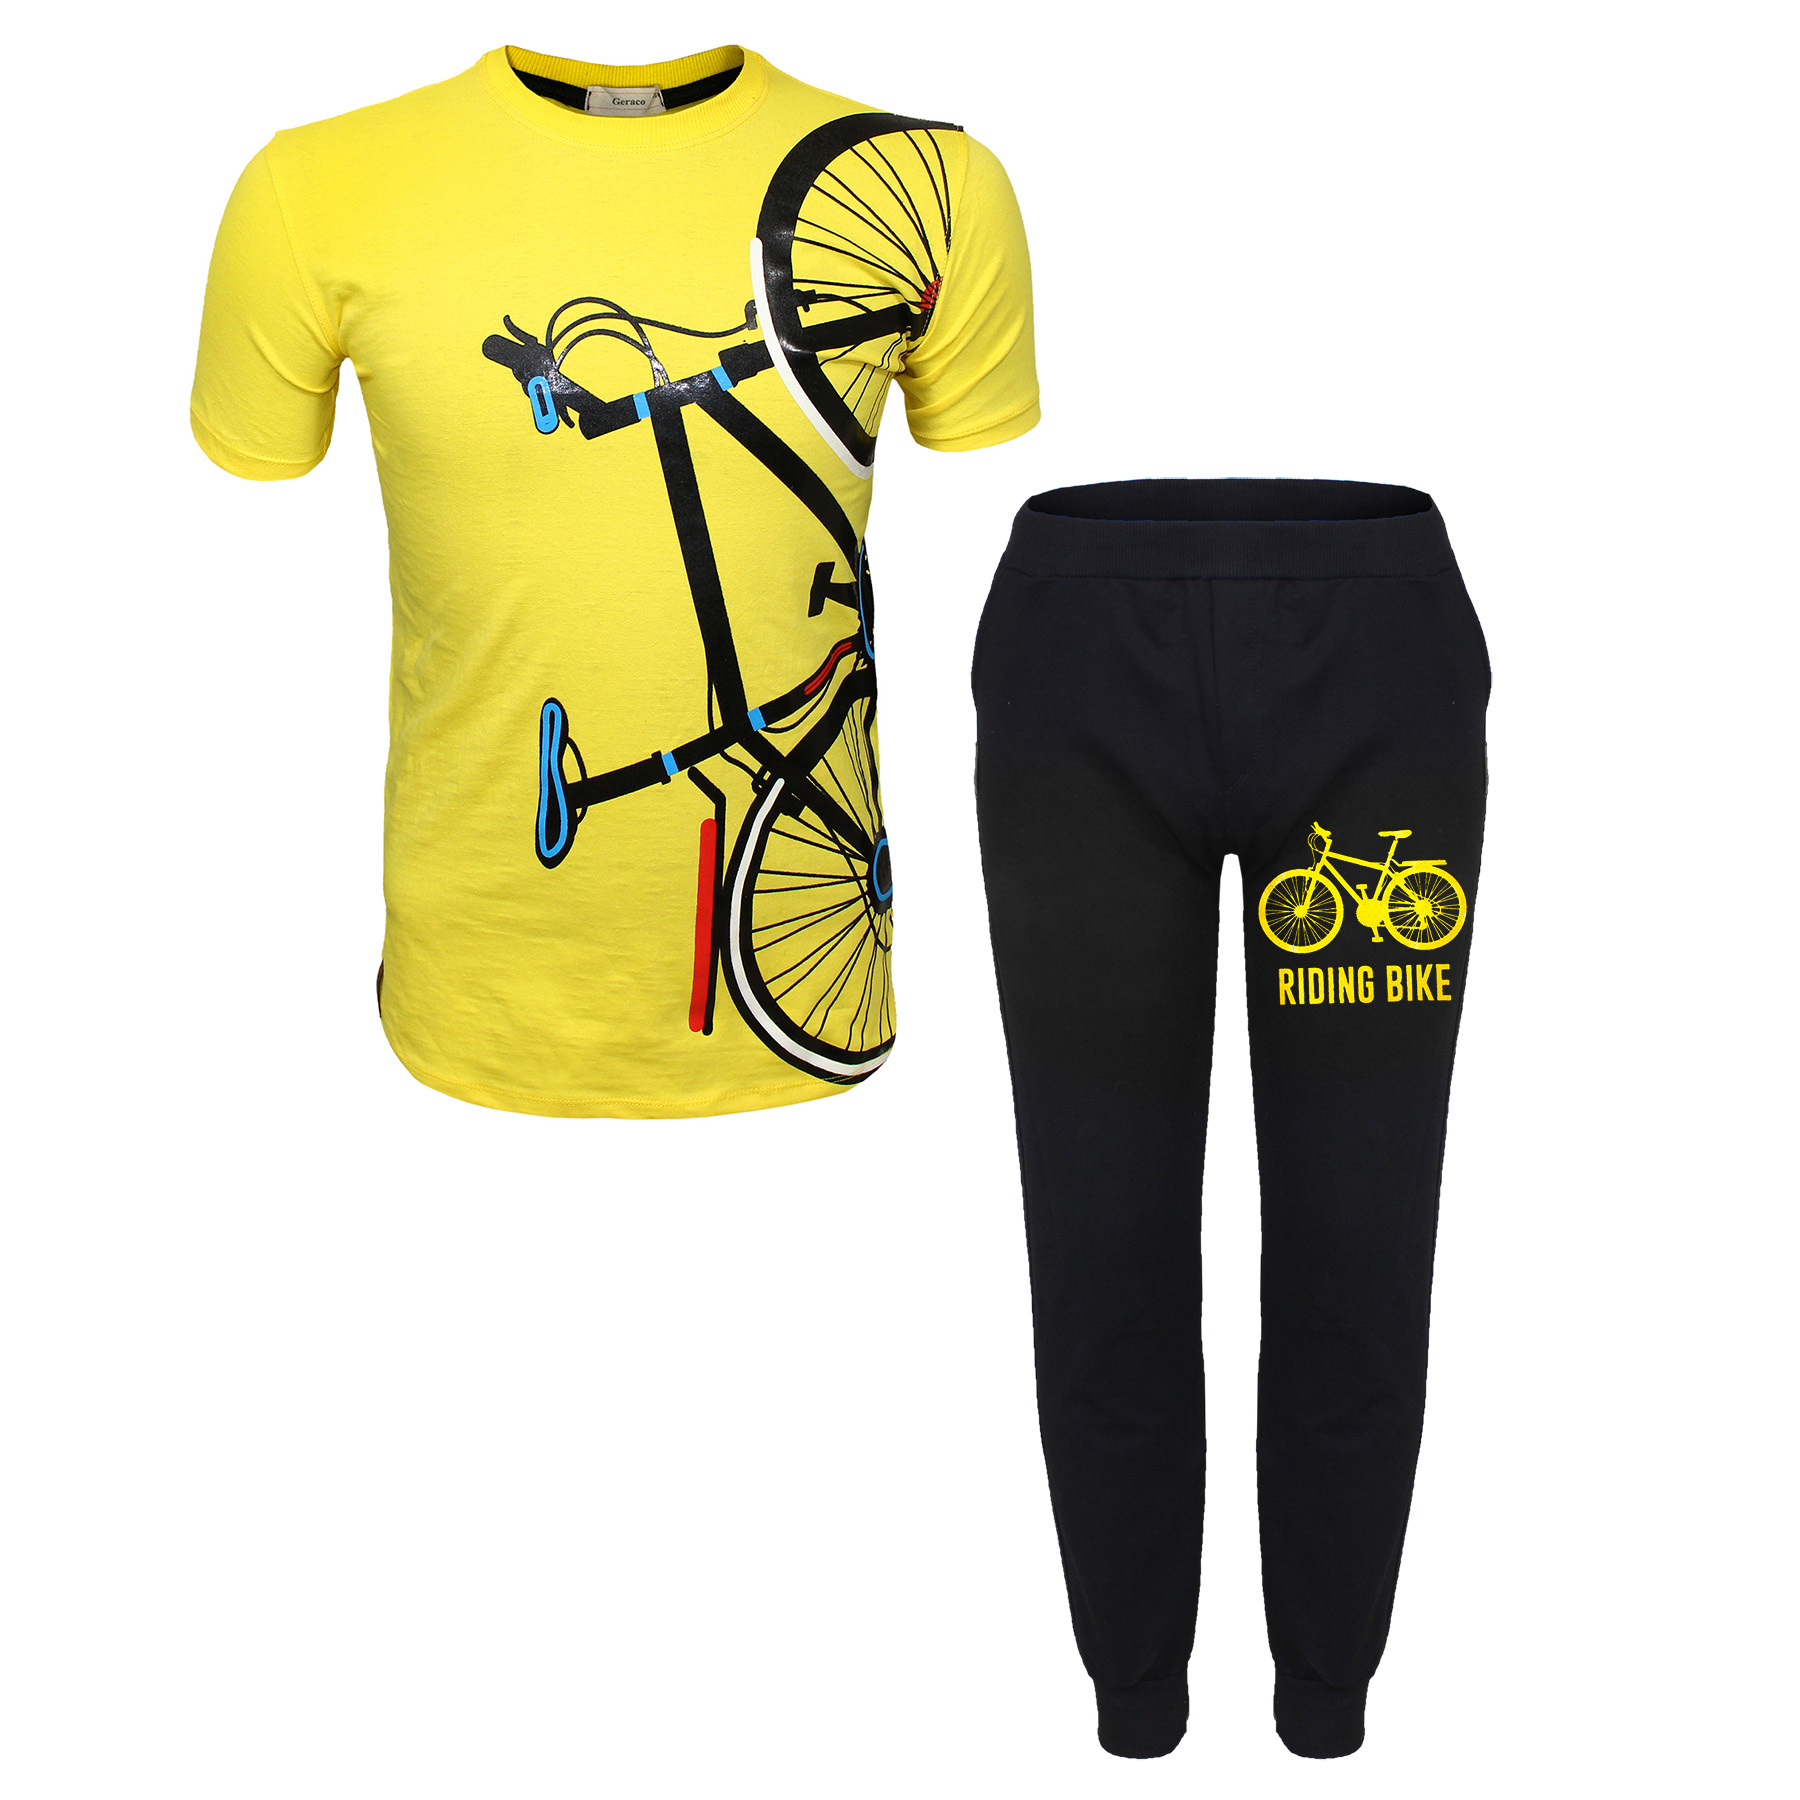 نقد و بررسی ست تی شرت و شلوار پسرانه مدل Standing bike رنگ زرد توسط خریداران